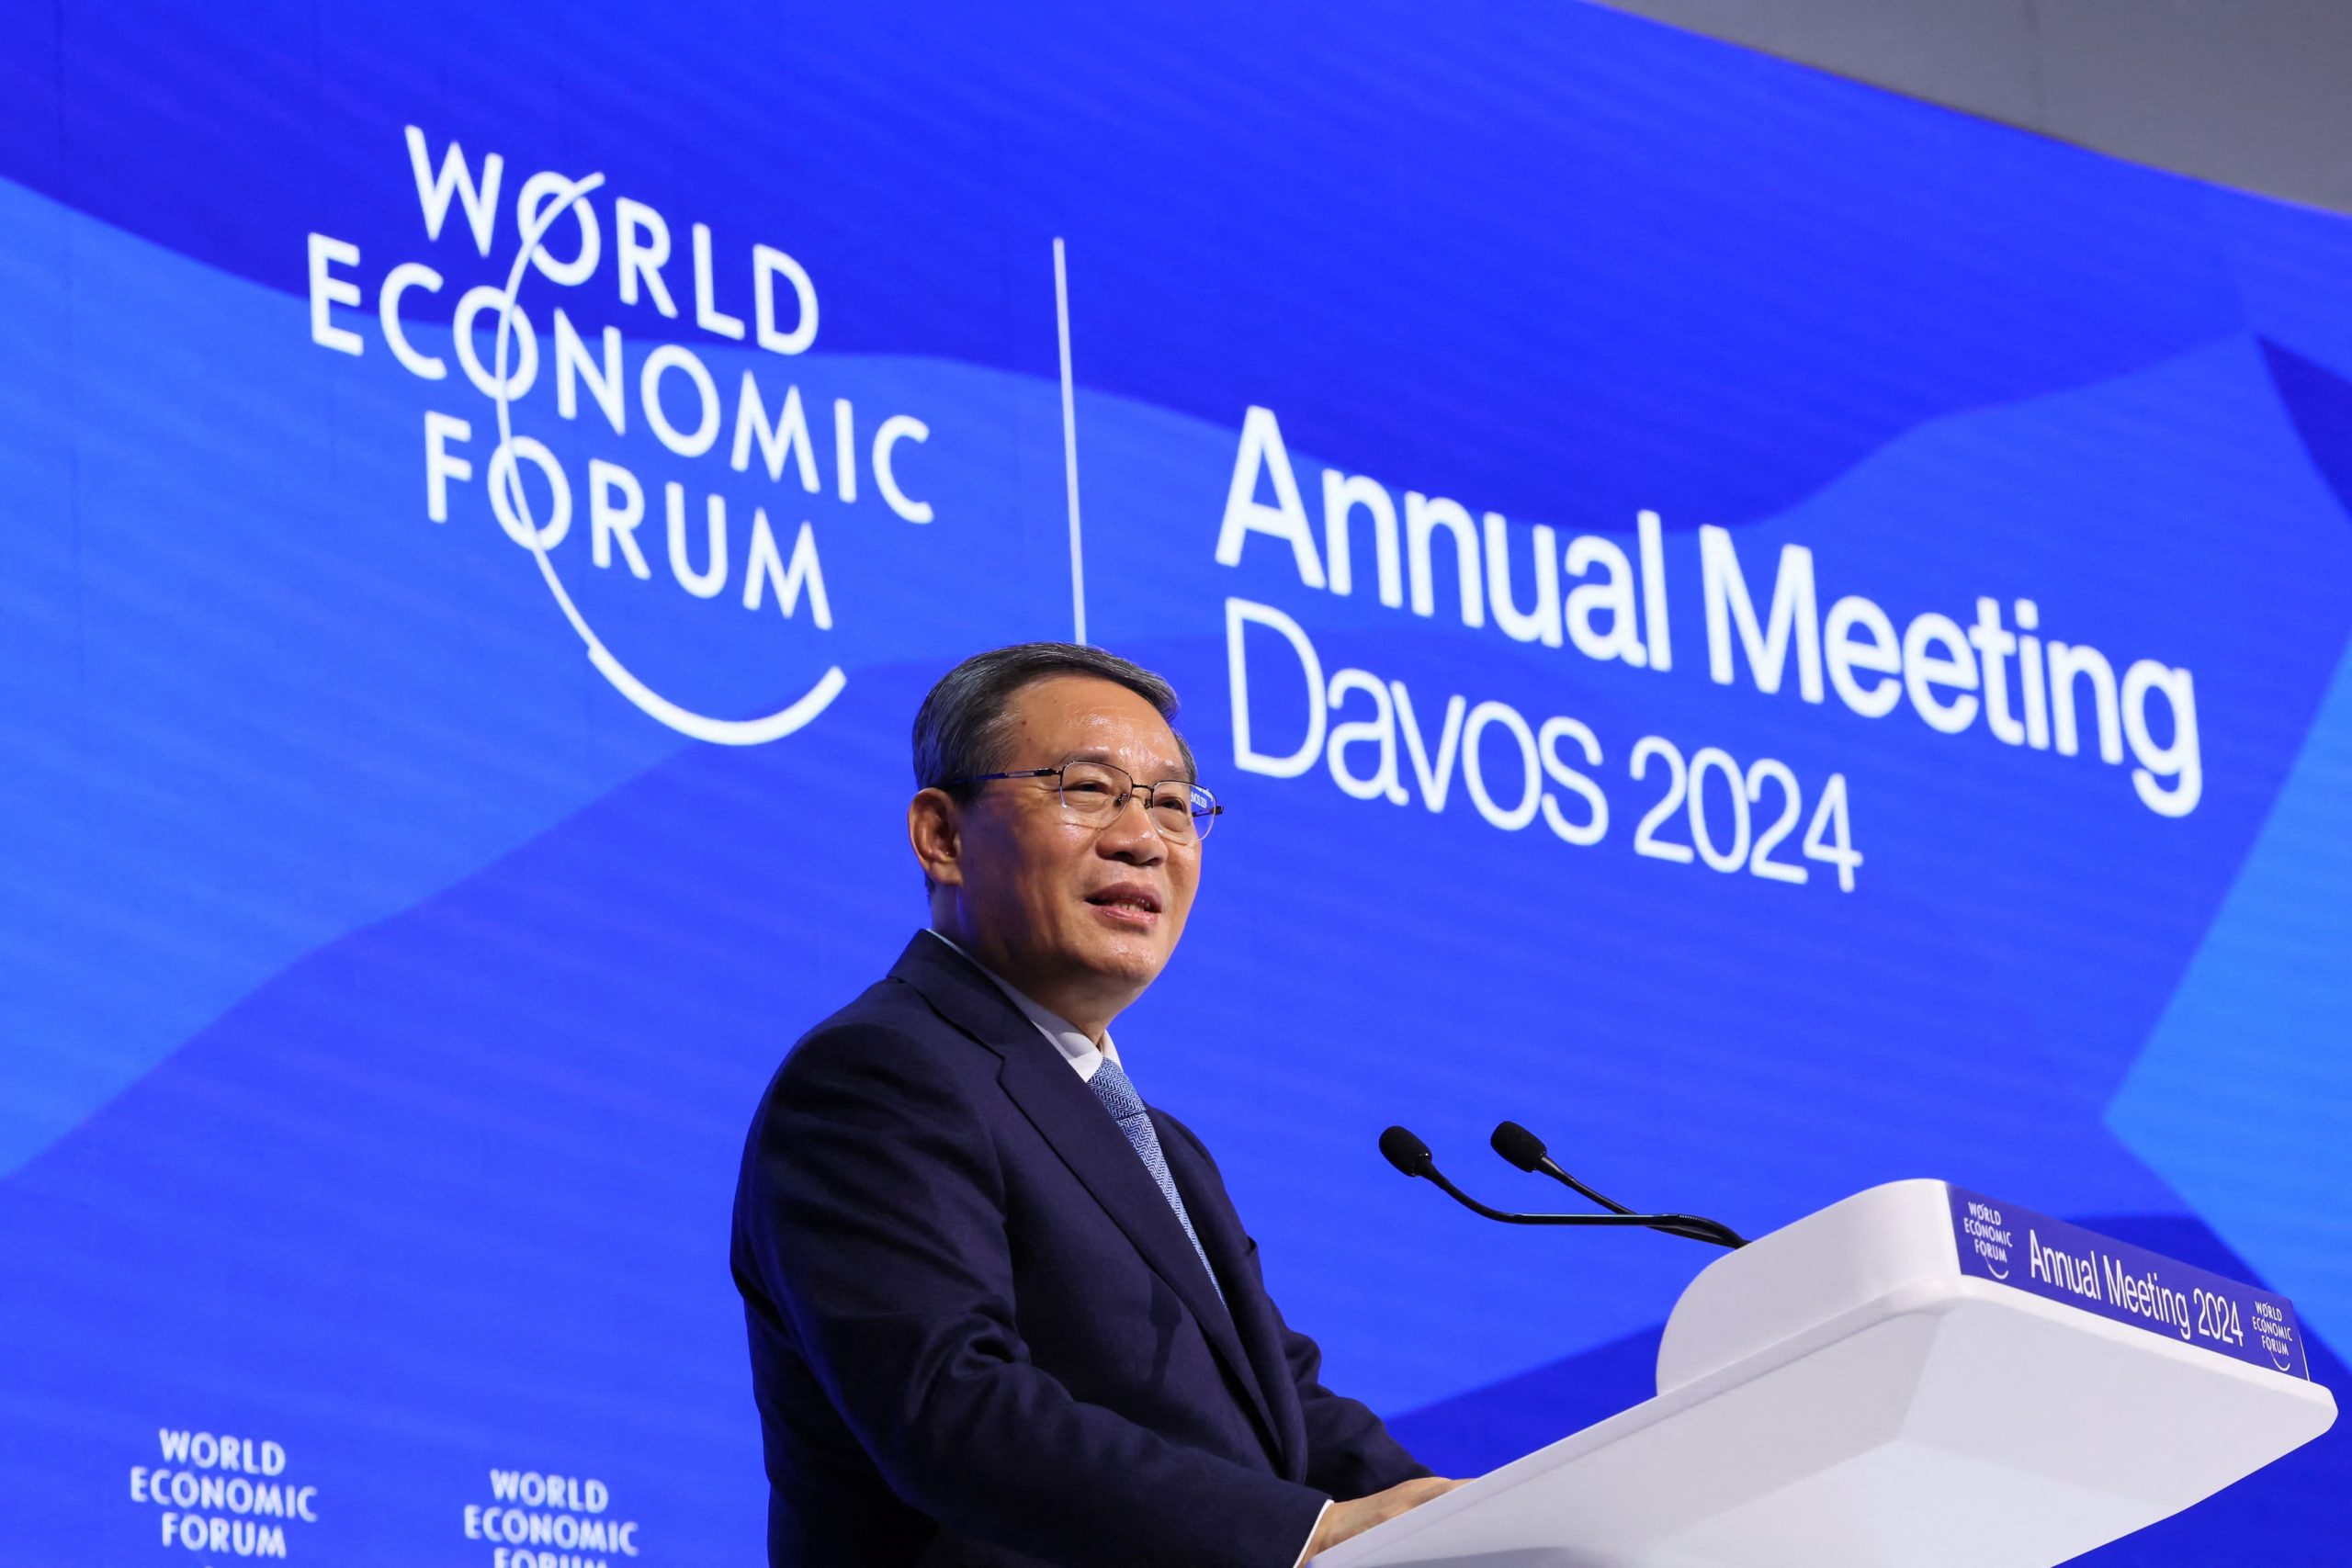 DISCUSS: Davos 2024 Gets Underway